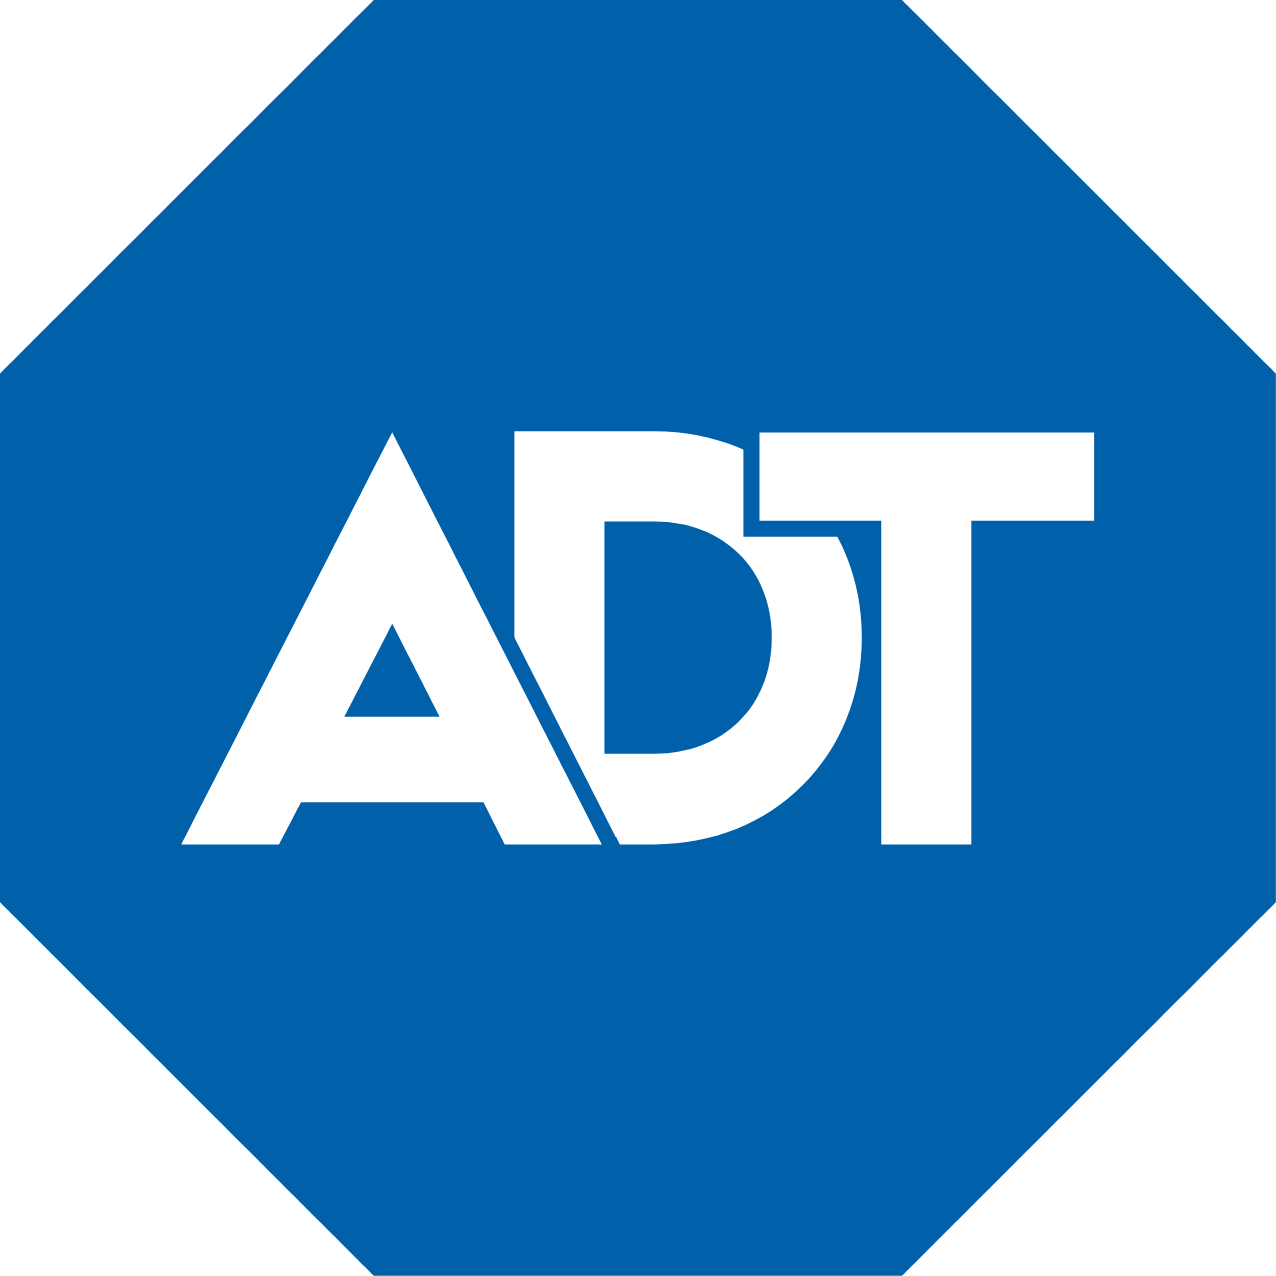 ADT logo in transparent PNG format